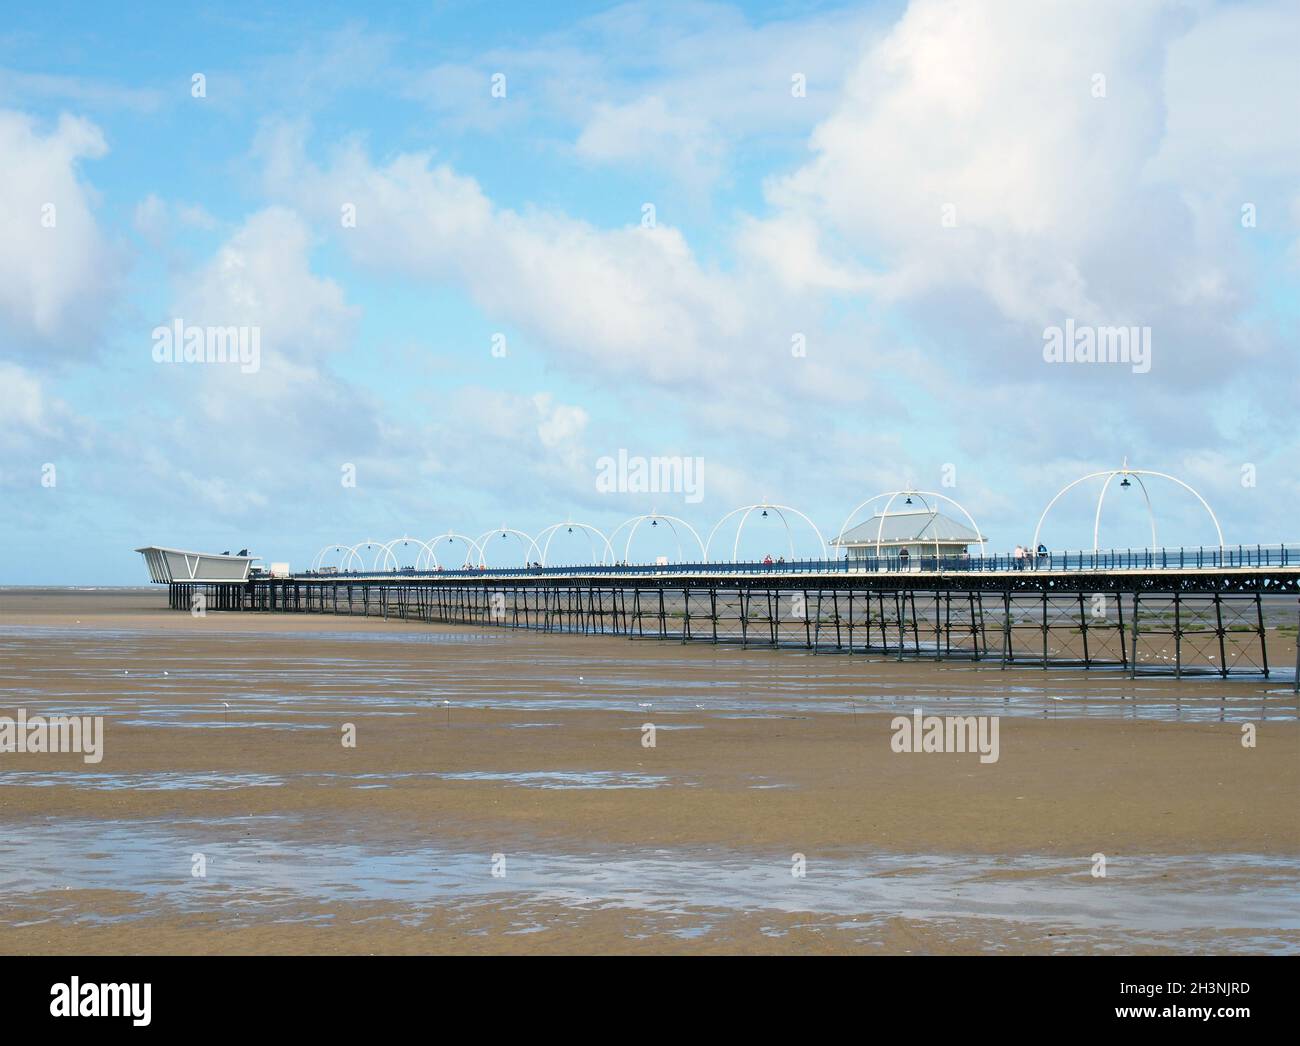 Lo storico molo di southport merseyside con la spiaggia a bassa marea e il cielo estivo si riflette nell'acqua sulla spiaggia Foto Stock